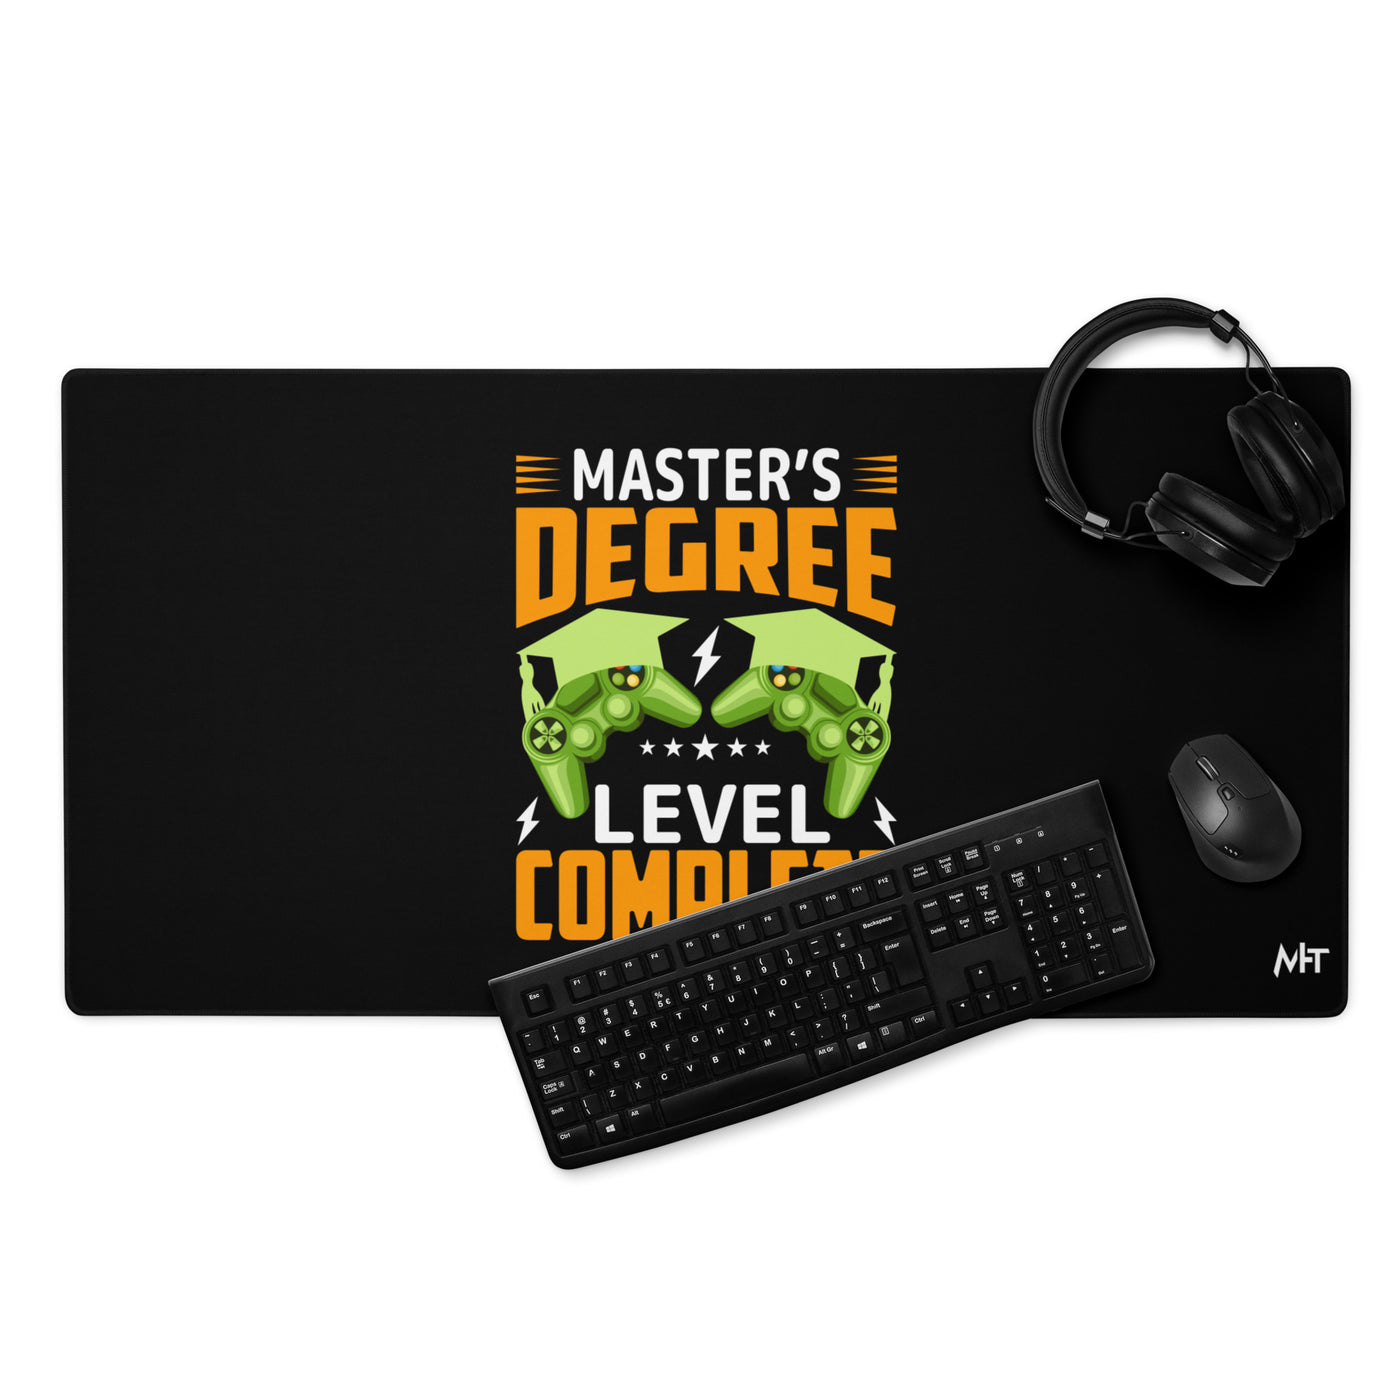 Master's Degree Level Complete - Desk Mat